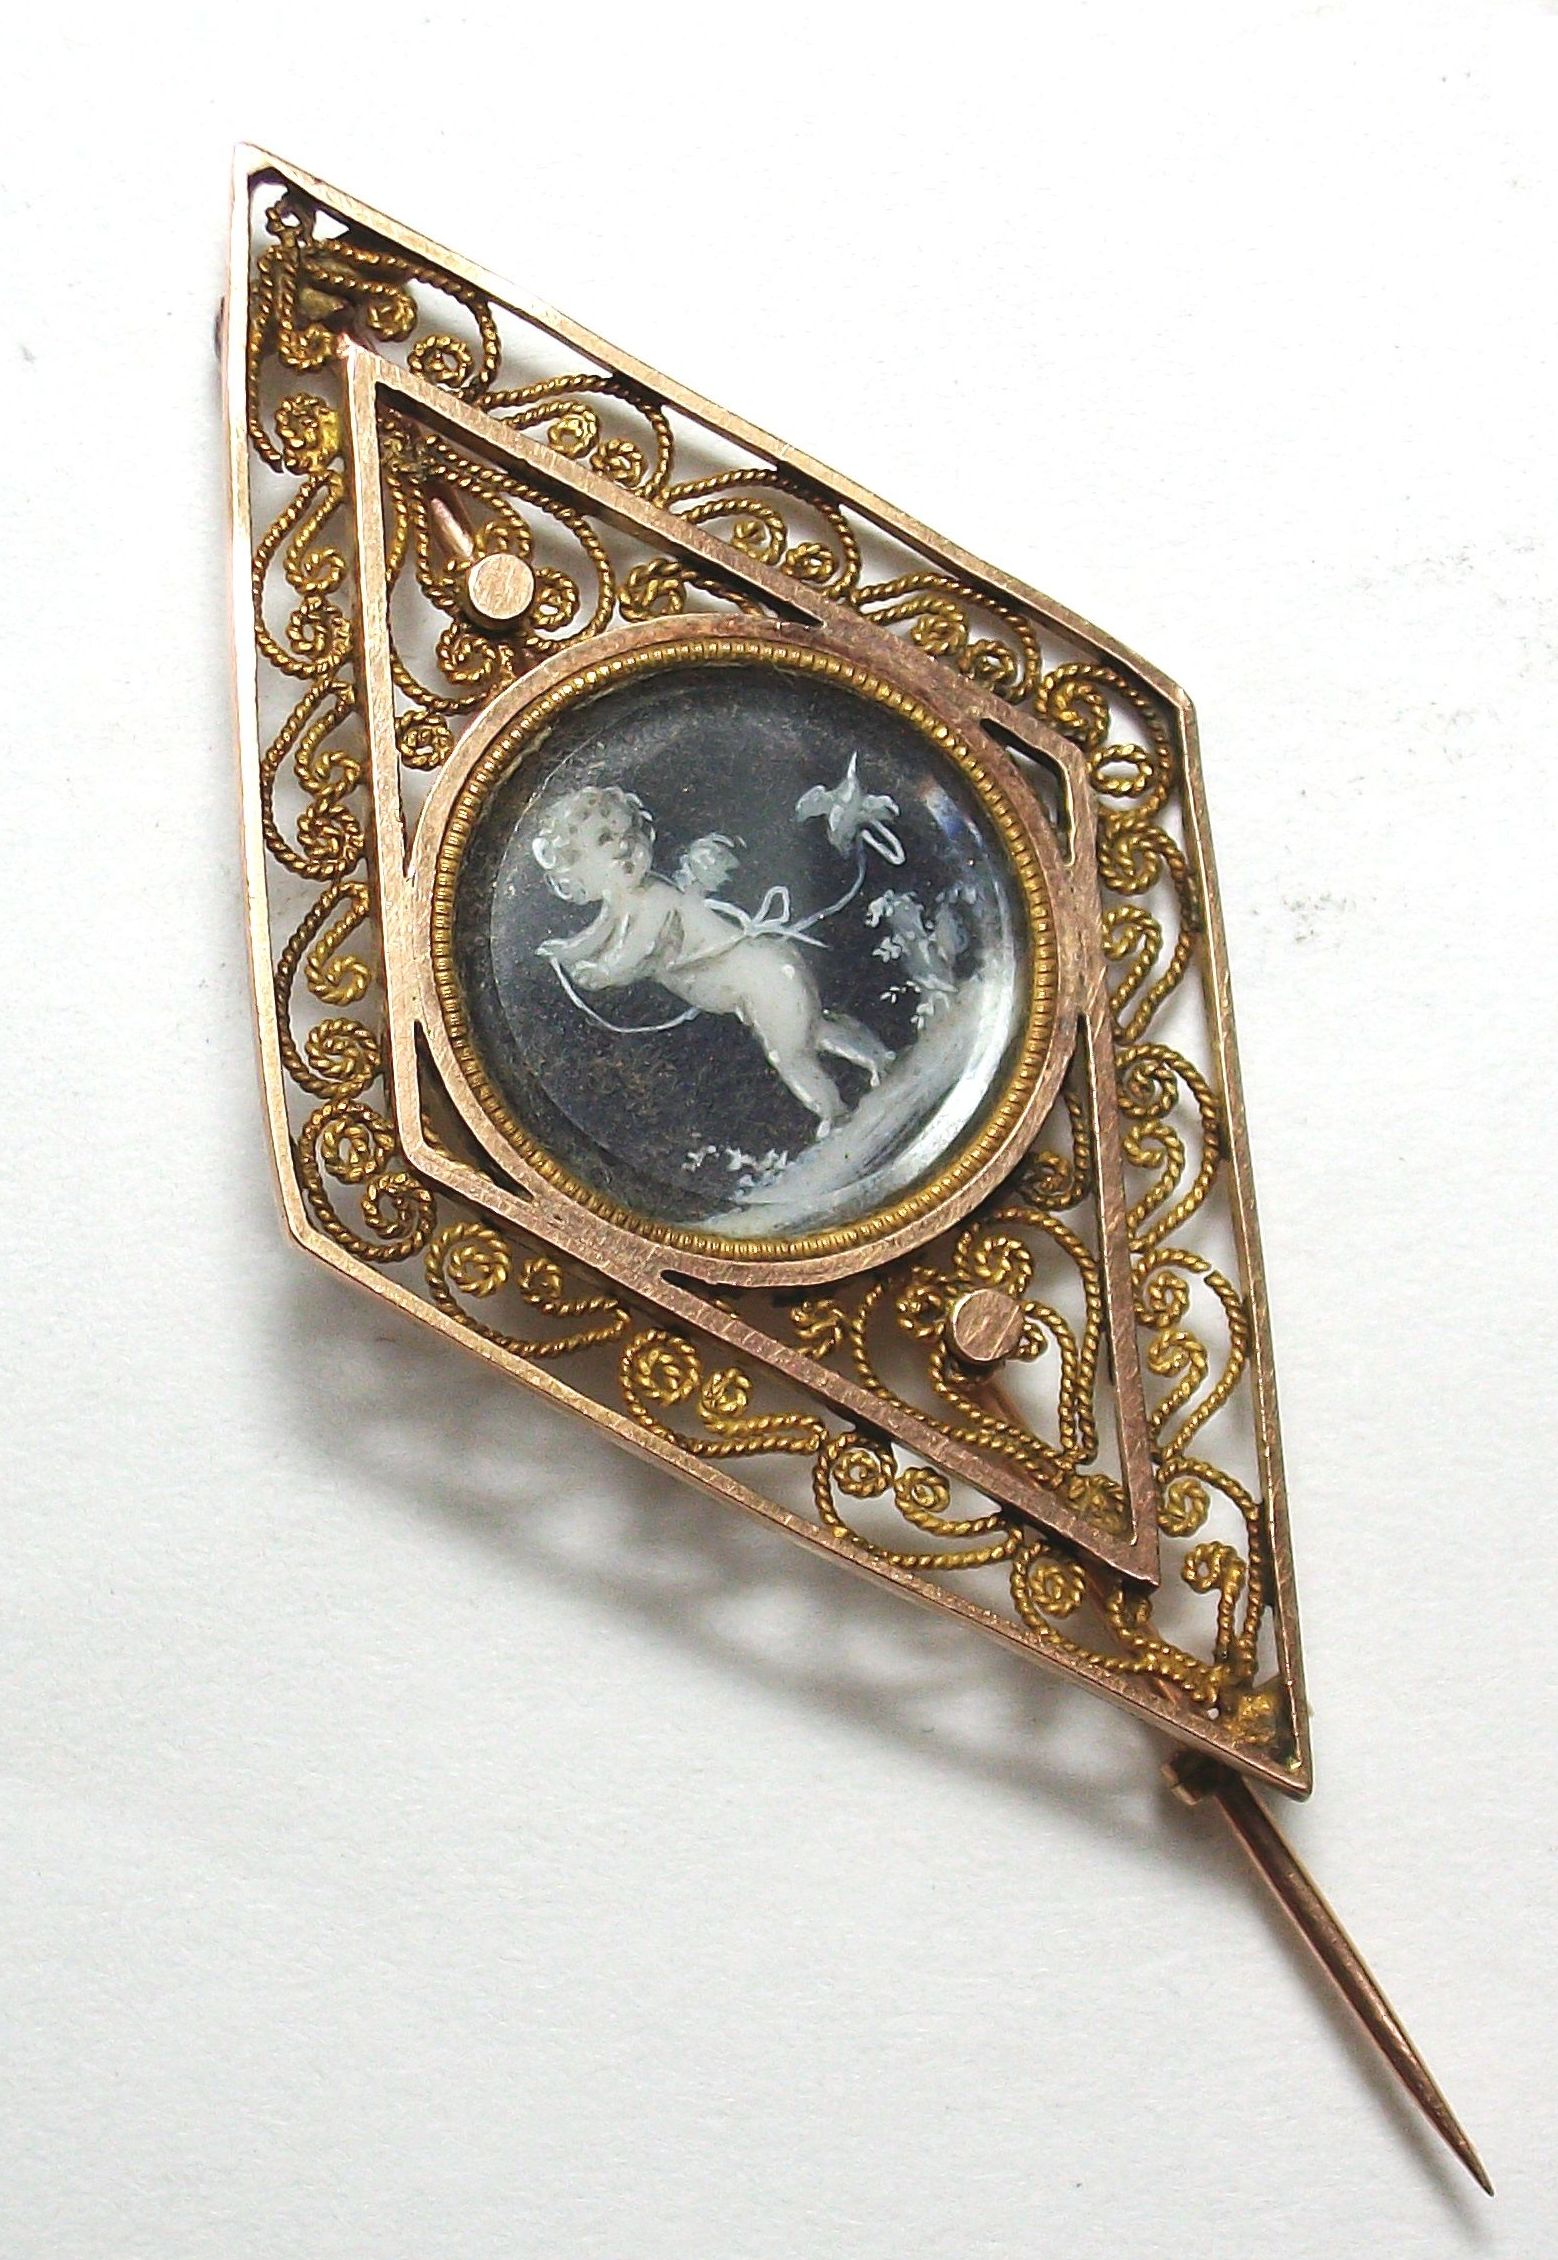 Broche romboidal realizado en oro de 18k  con filibrana y tondo central con putti pintado en acuarela. Principios s. XIX. VENDIDO